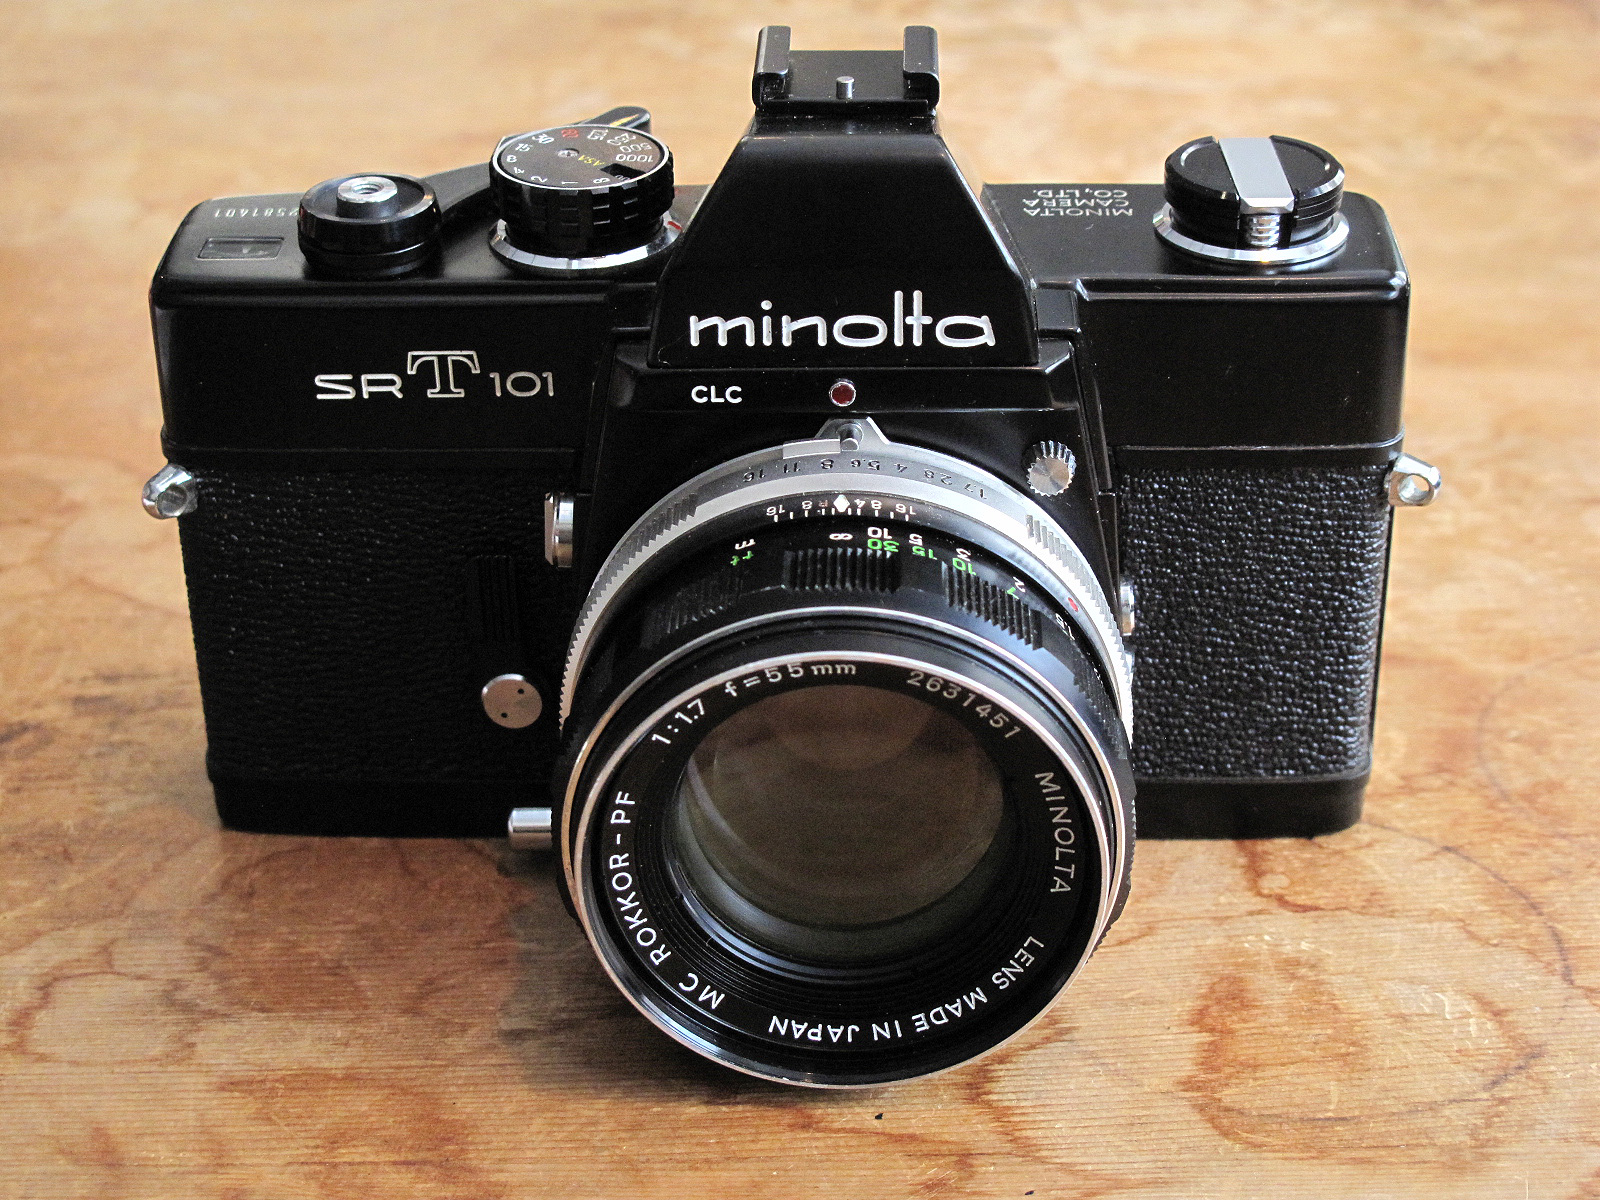 ミノルタSRT101ブラック ボディ フィルムカメラ レンズ付き - フィルム 